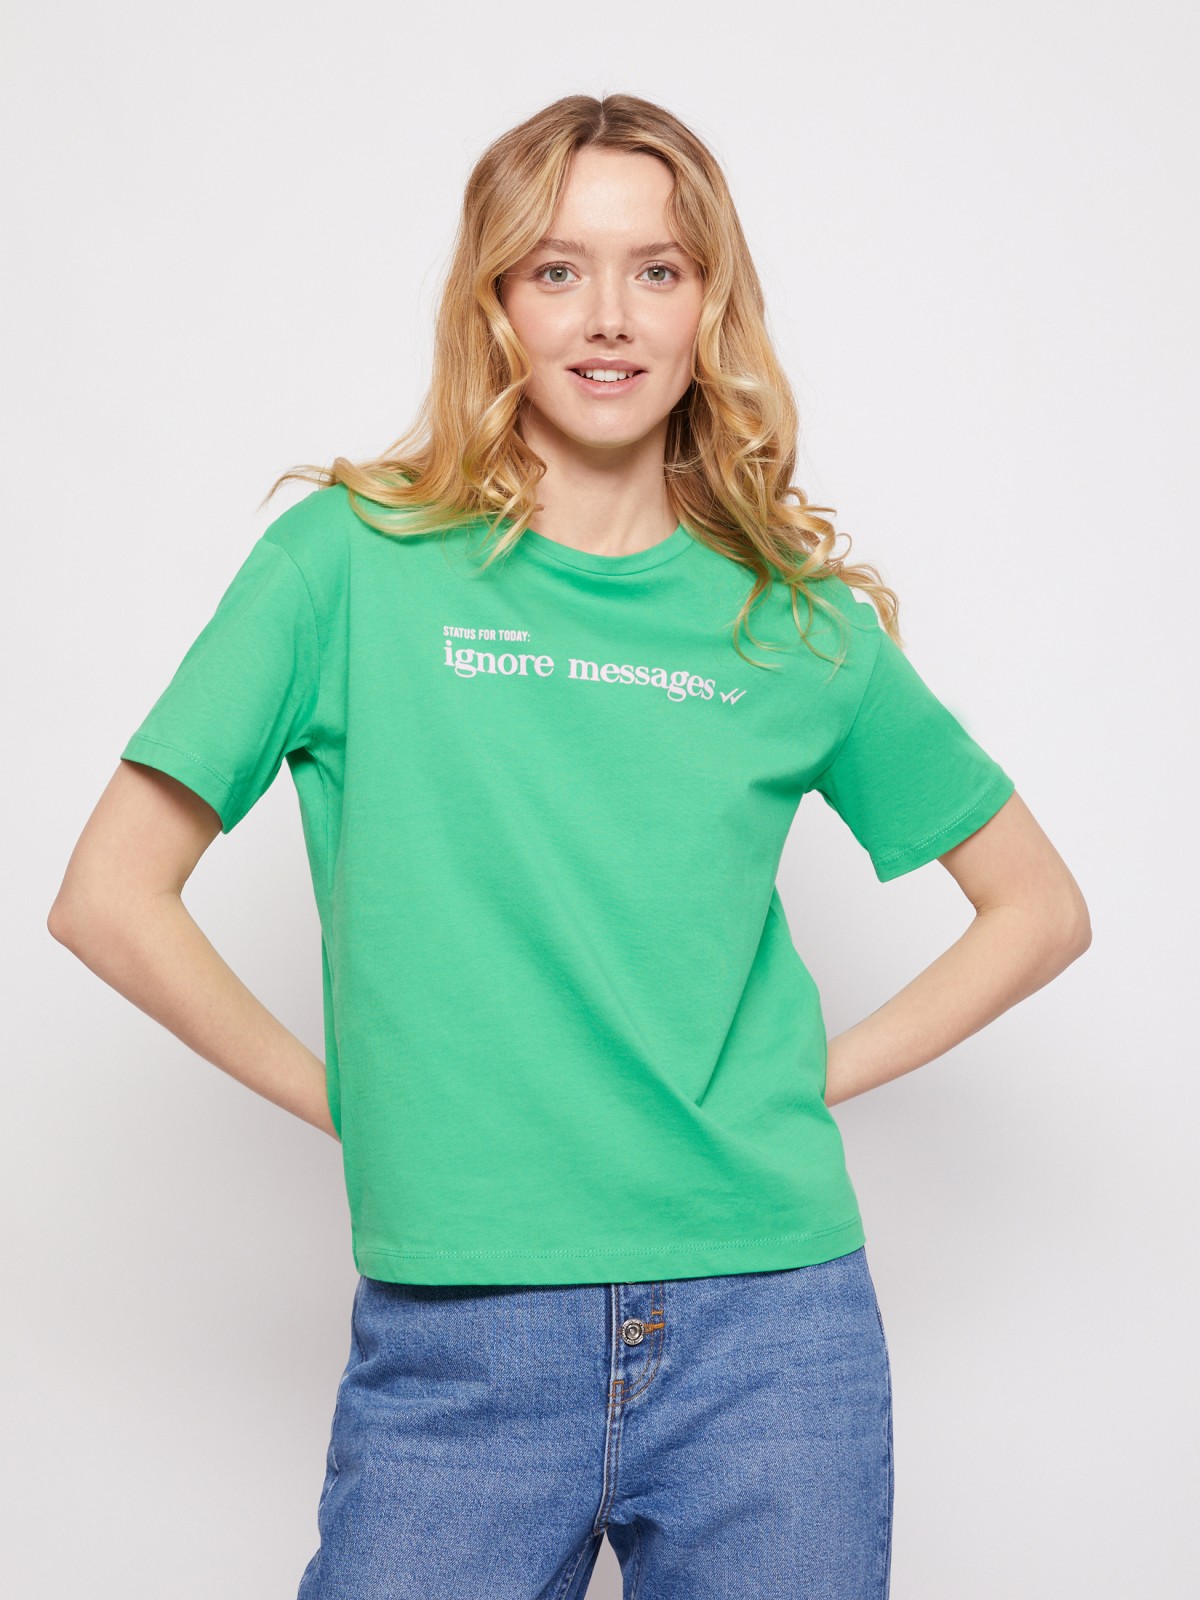 Хлопковая футболка zolla 021213295523, цвет зеленый, размер XS - фото 2